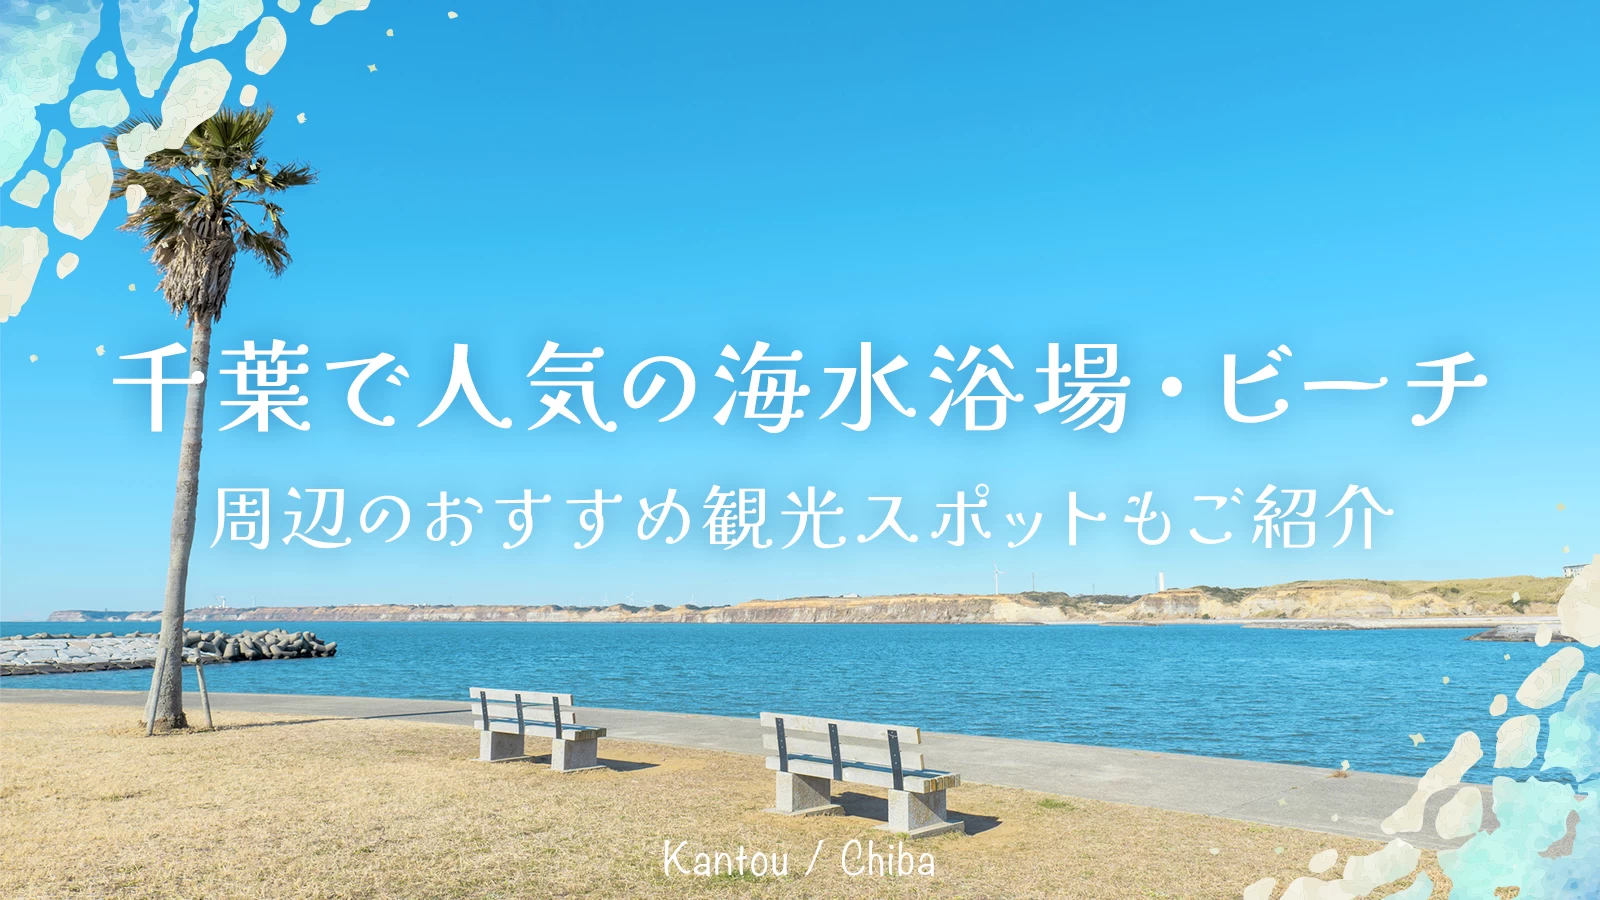 【関東】千葉で人気の海水浴場・ビーチ12選 周辺のおすすめ観光スポットもご紹介